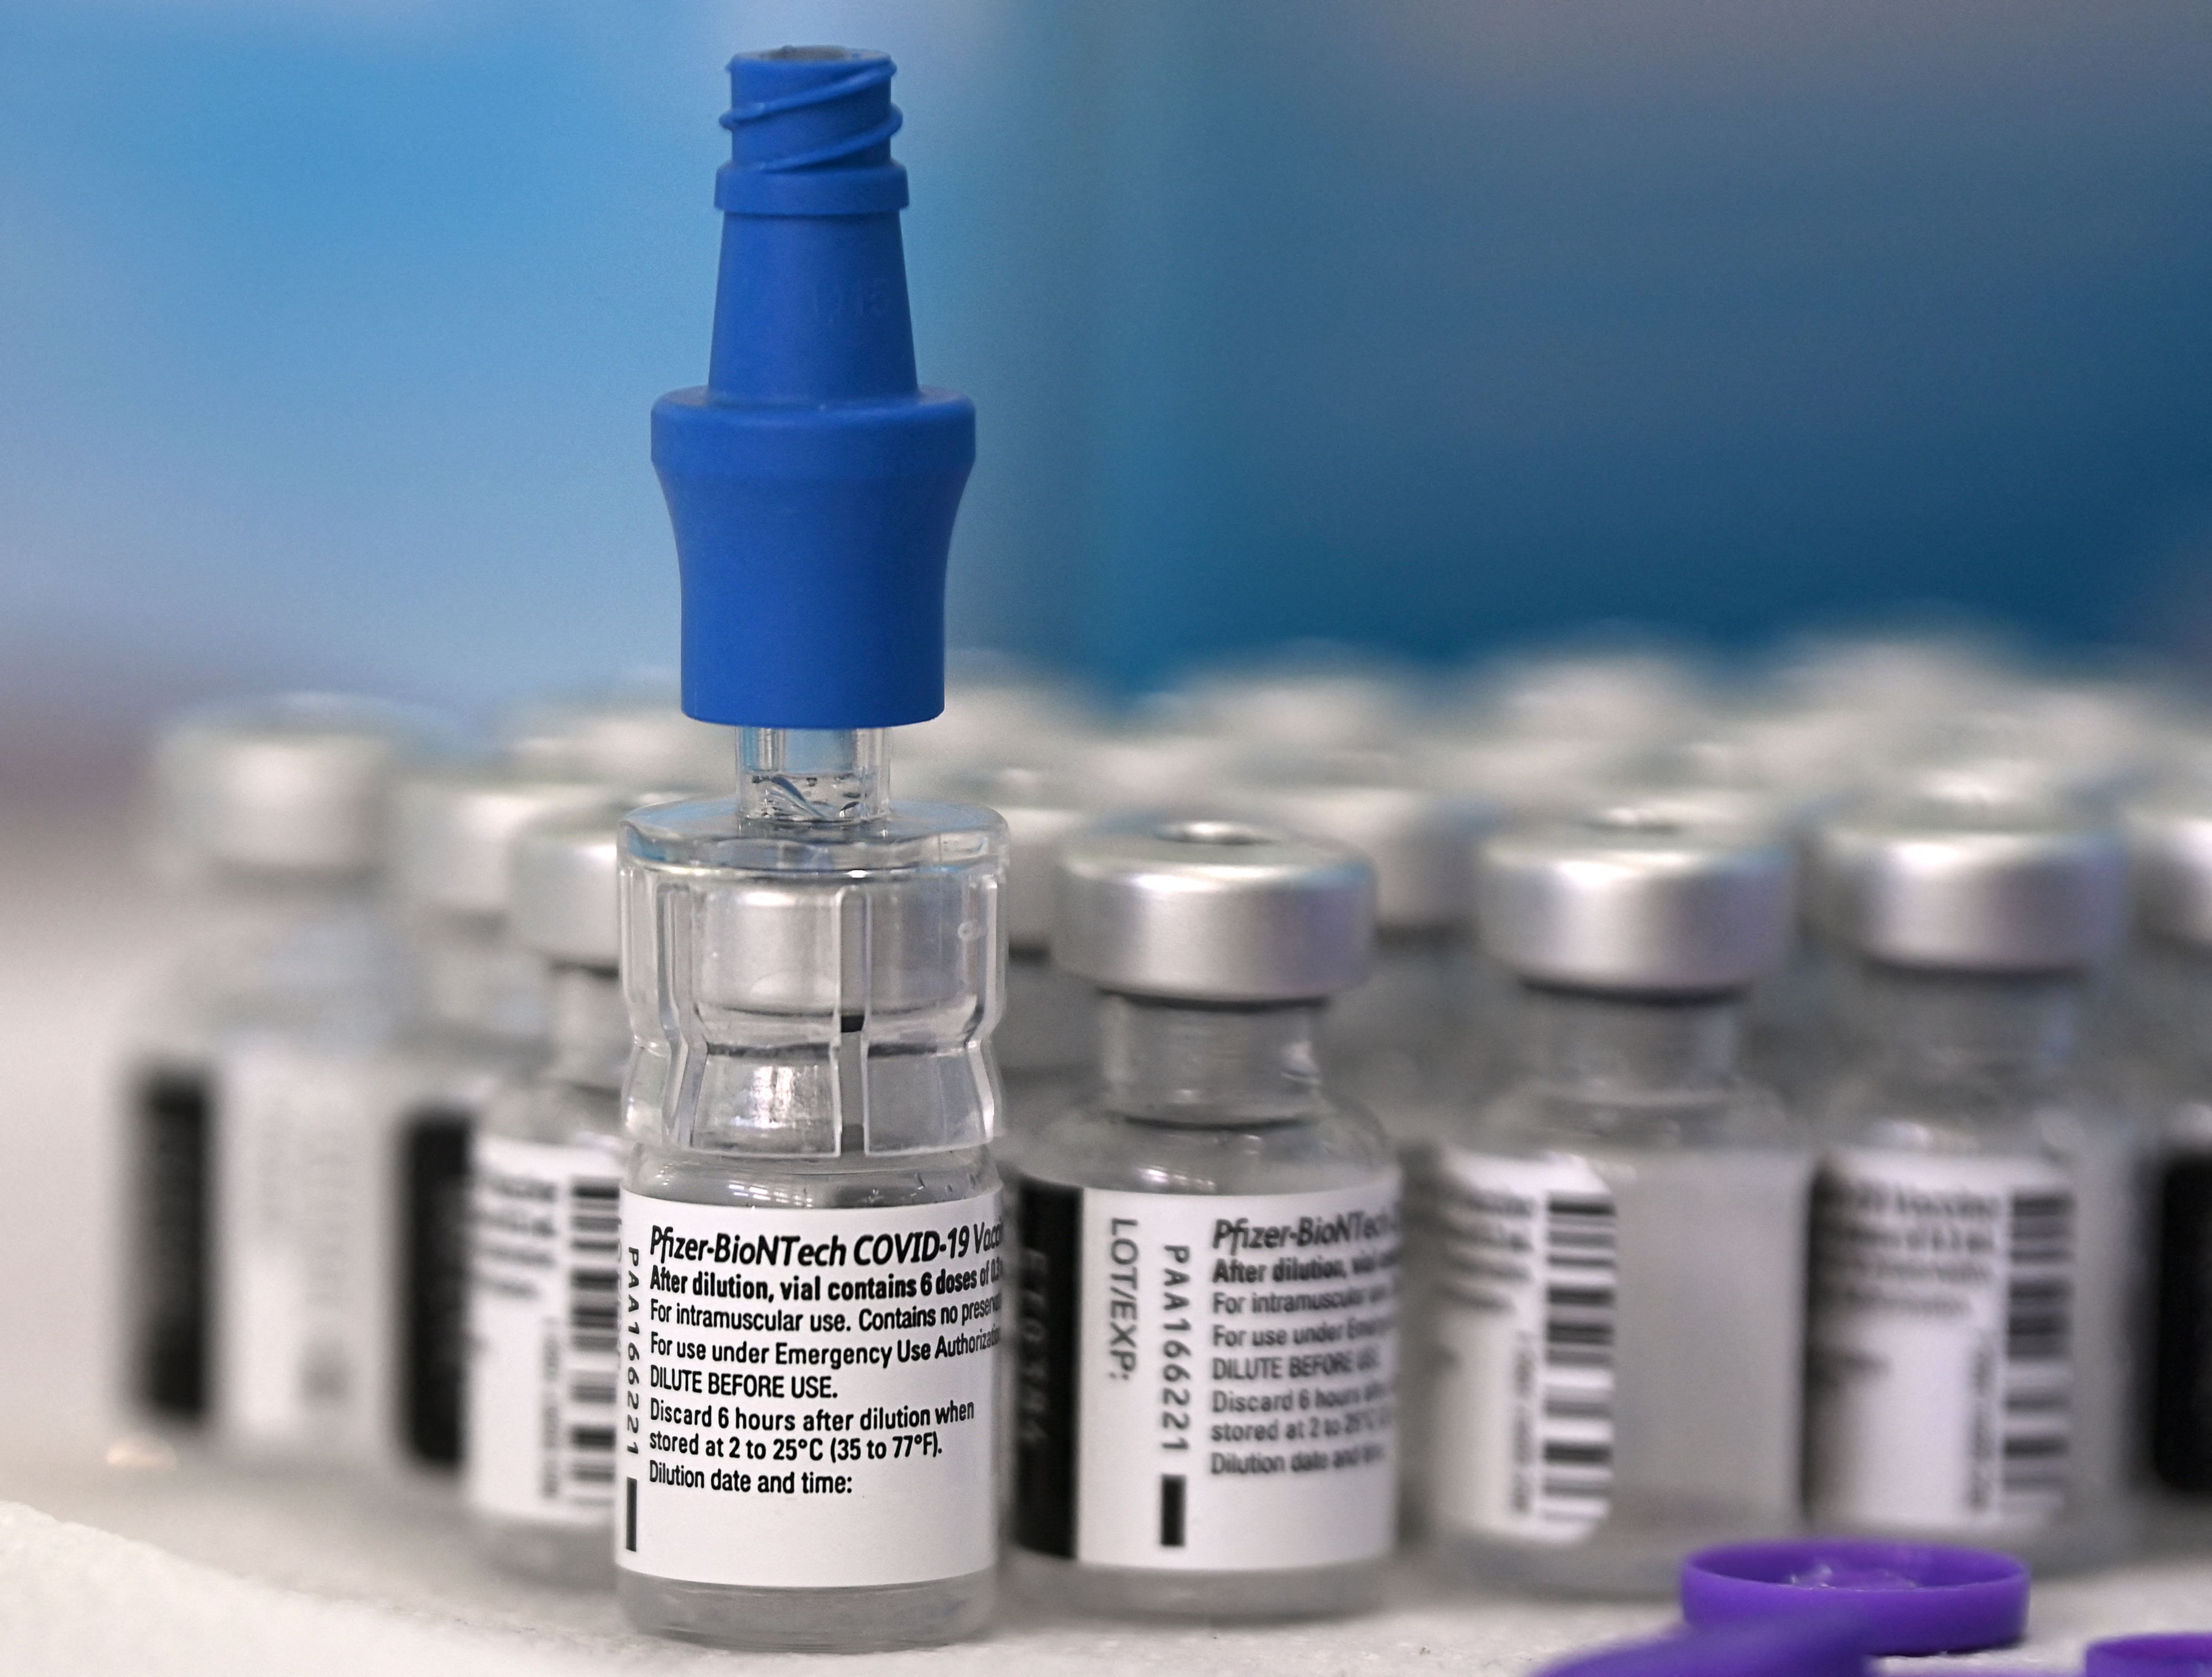 TecMundo no LinkedIn: Câncer de pâncreas: vacina destruiu células  cancerígenas em primeiro teste